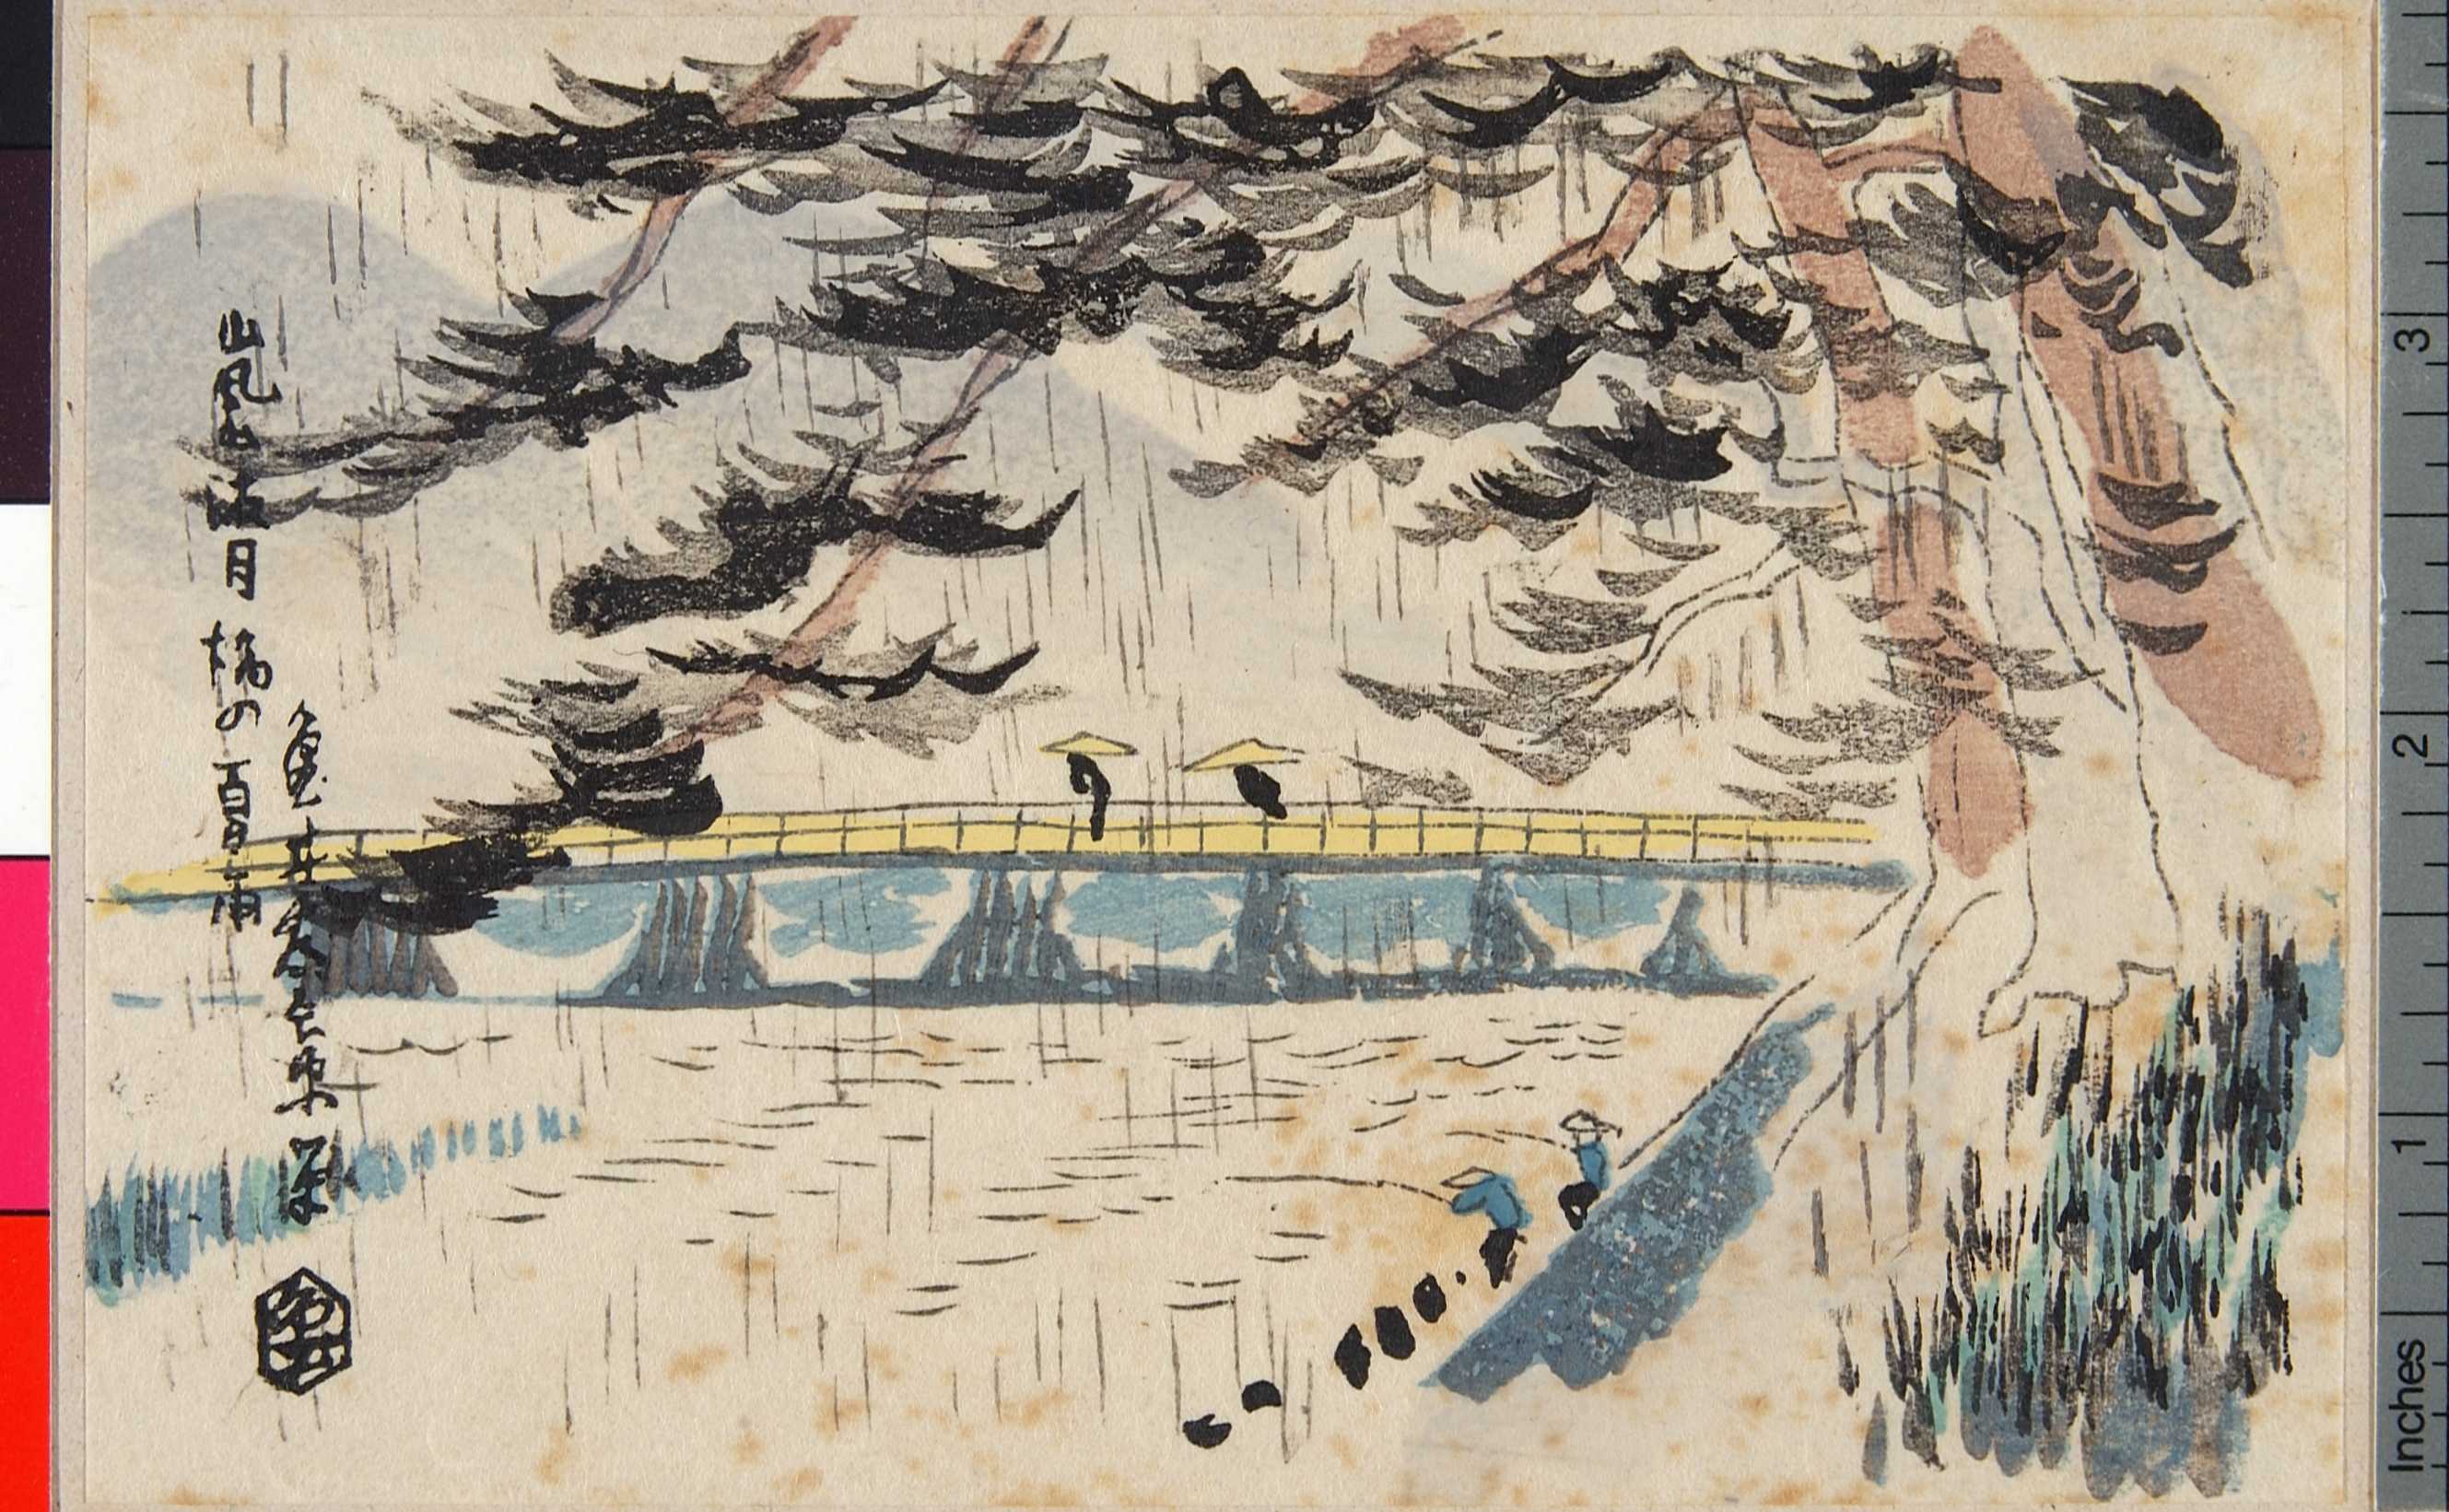 吉田半兵衛 嵐山渡月橋の夏雨 立命館大学 浮世絵検索